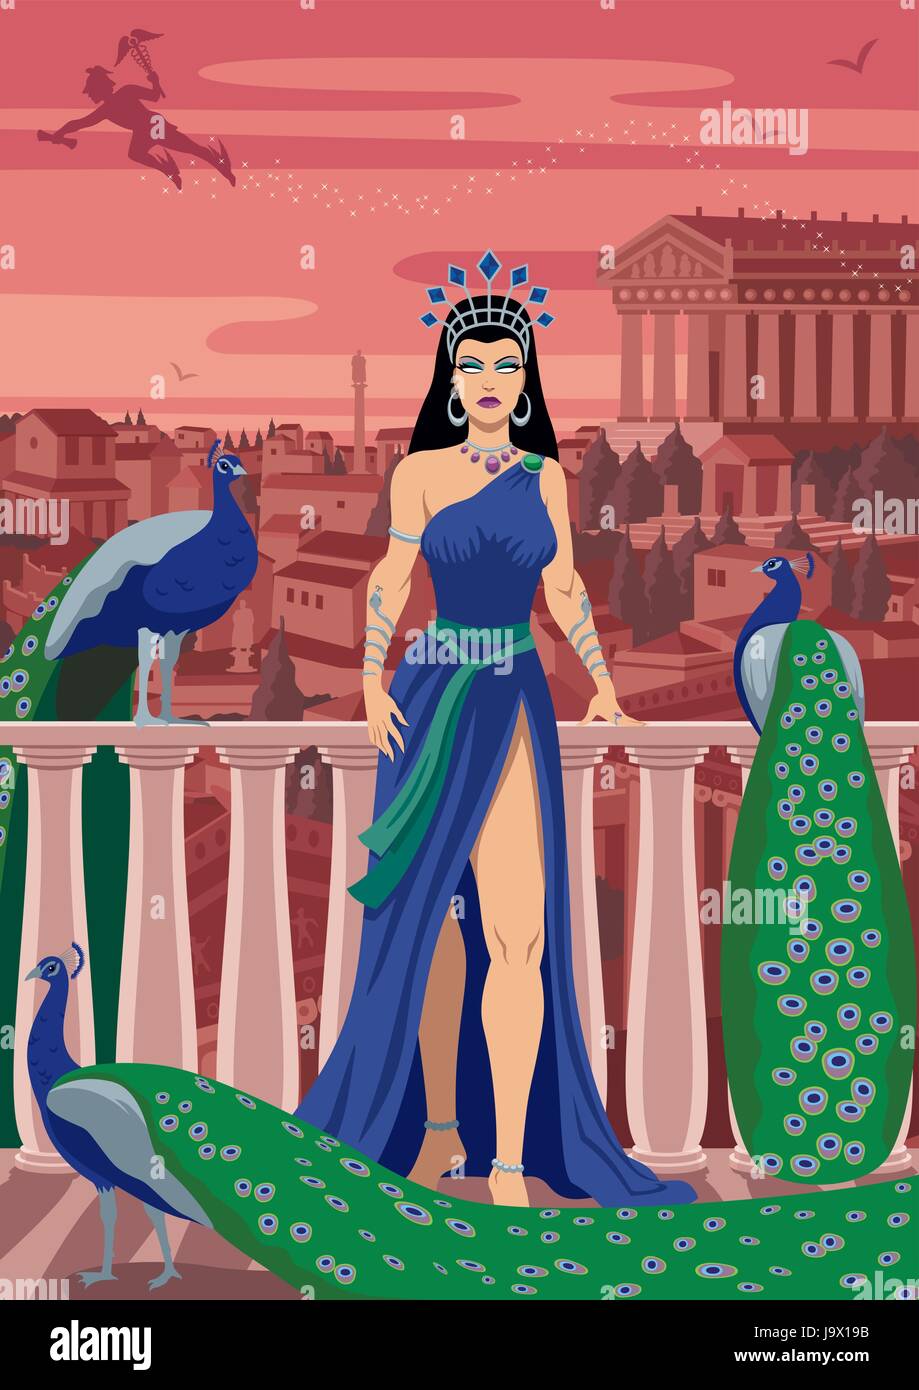 Hera, Queen of the Greek gods, among her favorite birds. Stock Vector